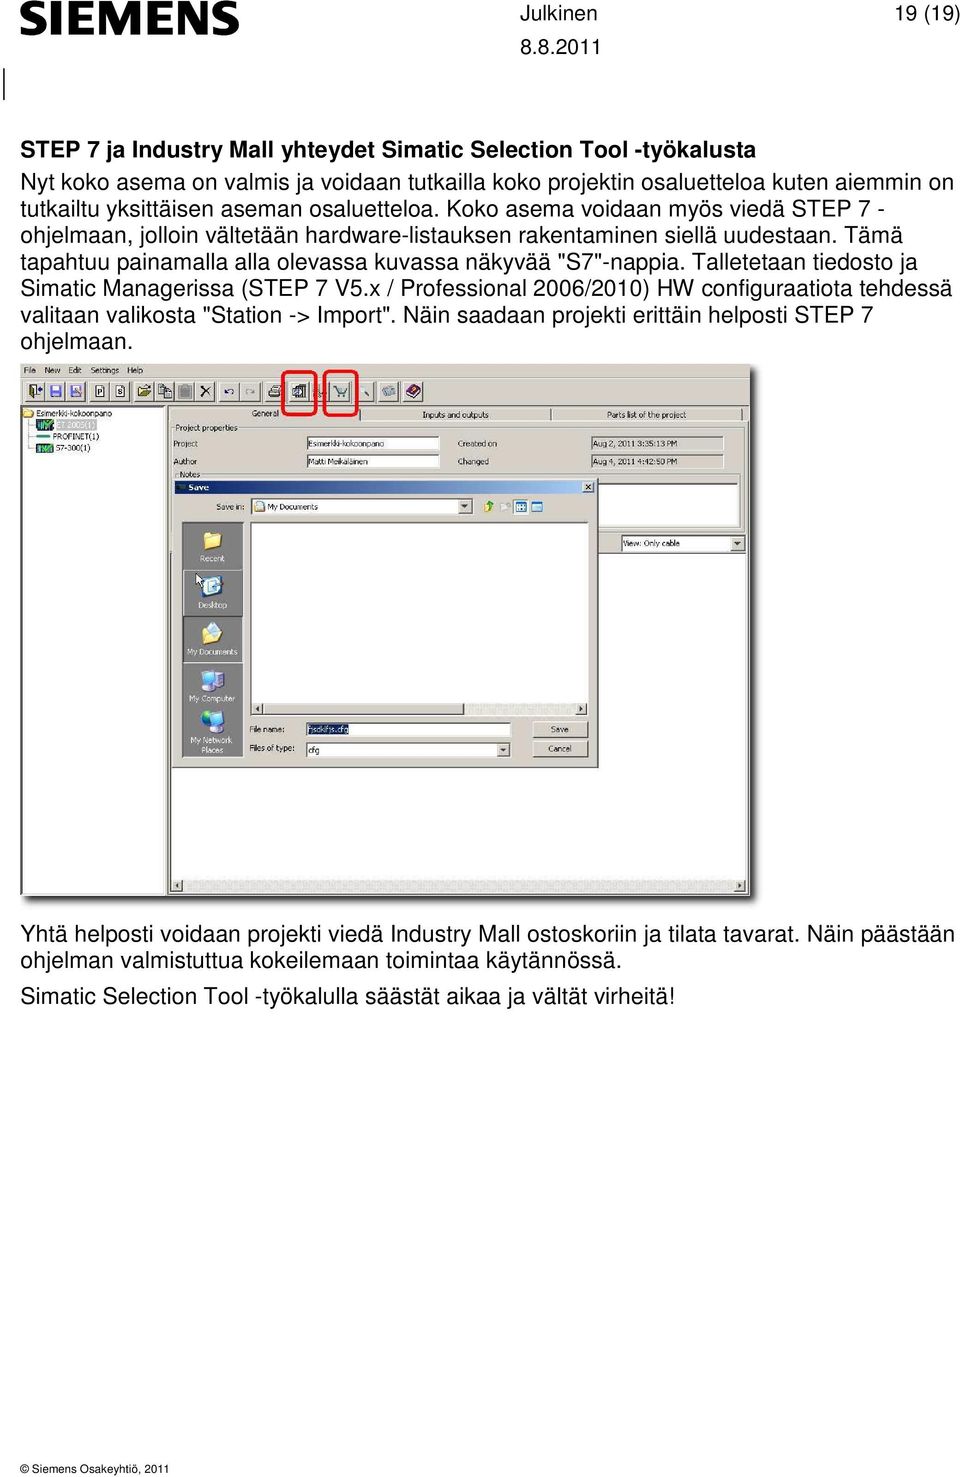 Talletetaan tiedosto ja Simatic Managerissa (STEP 7 V5.x / Professional 2006/2010) HW configuraatiota tehdessä valitaan valikosta "Station -> Import".